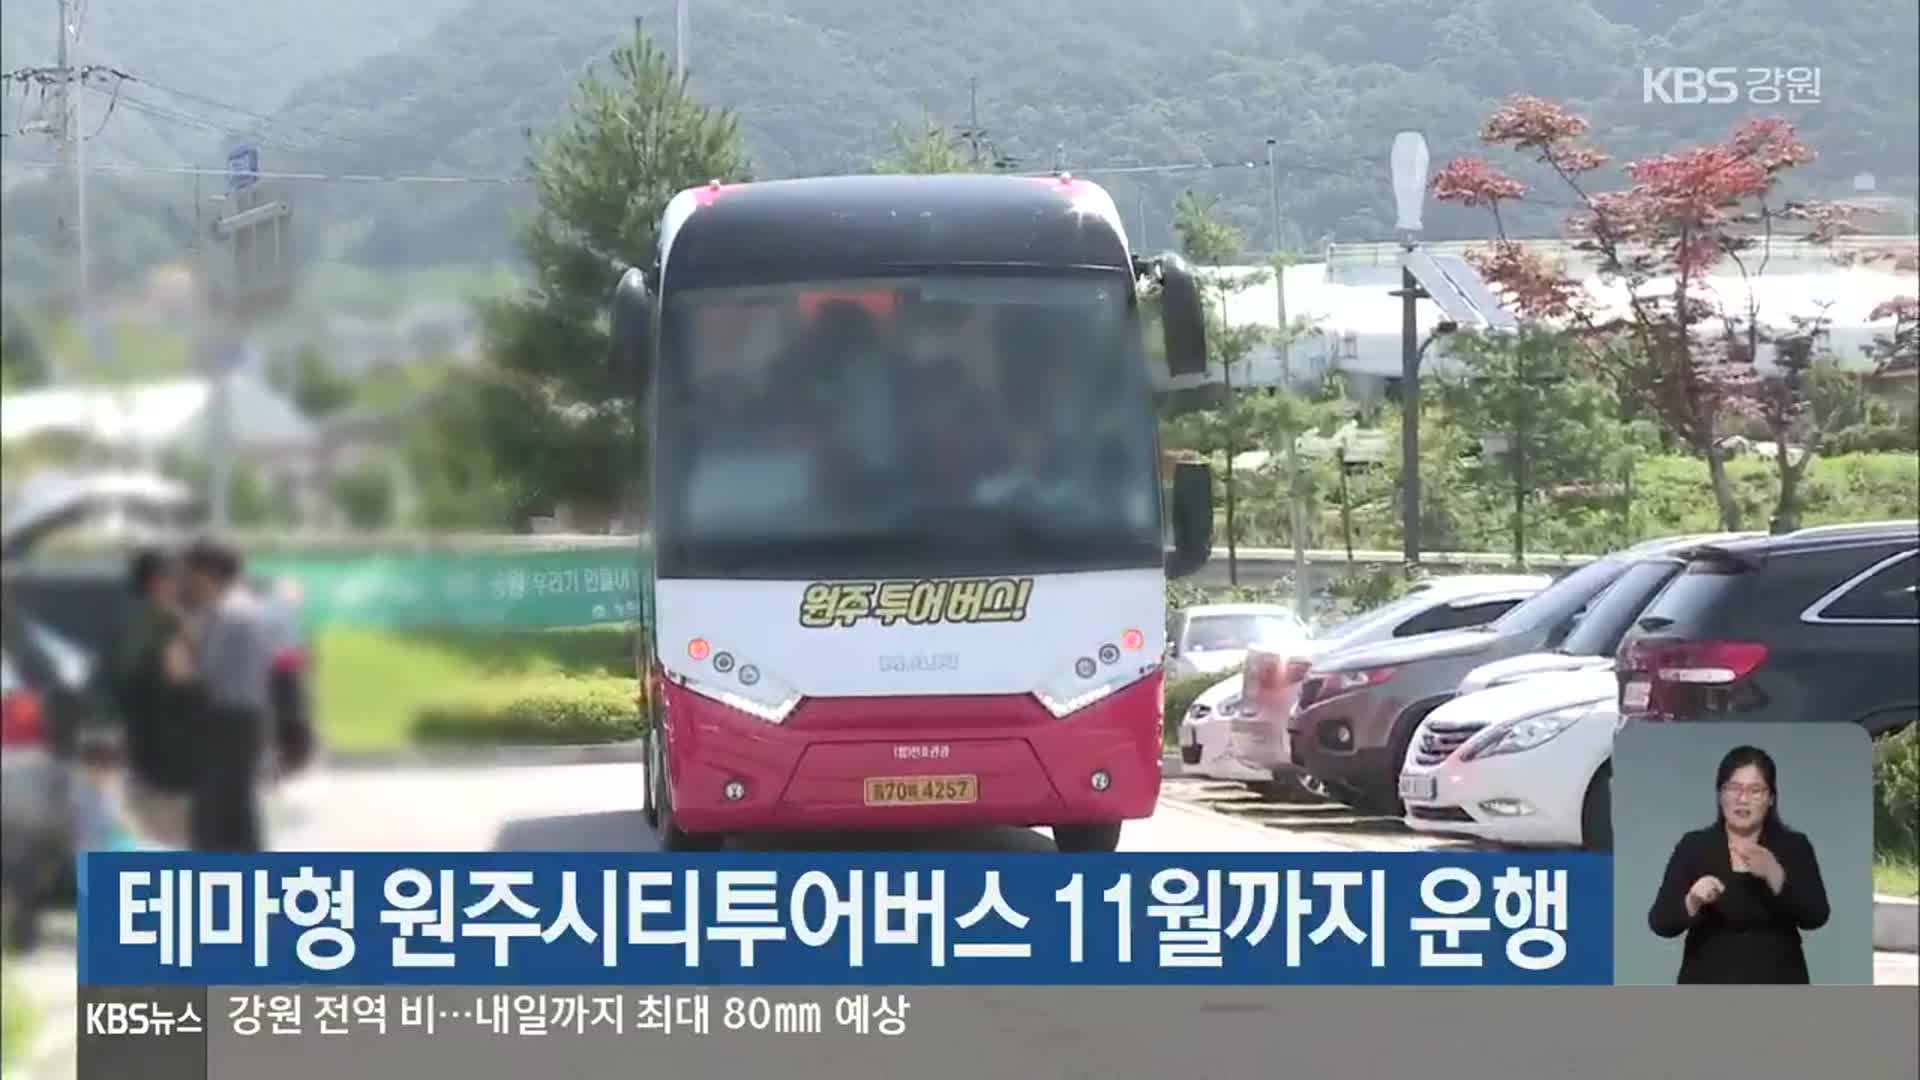 테마형 원주시티투어버스 11월까지 운행